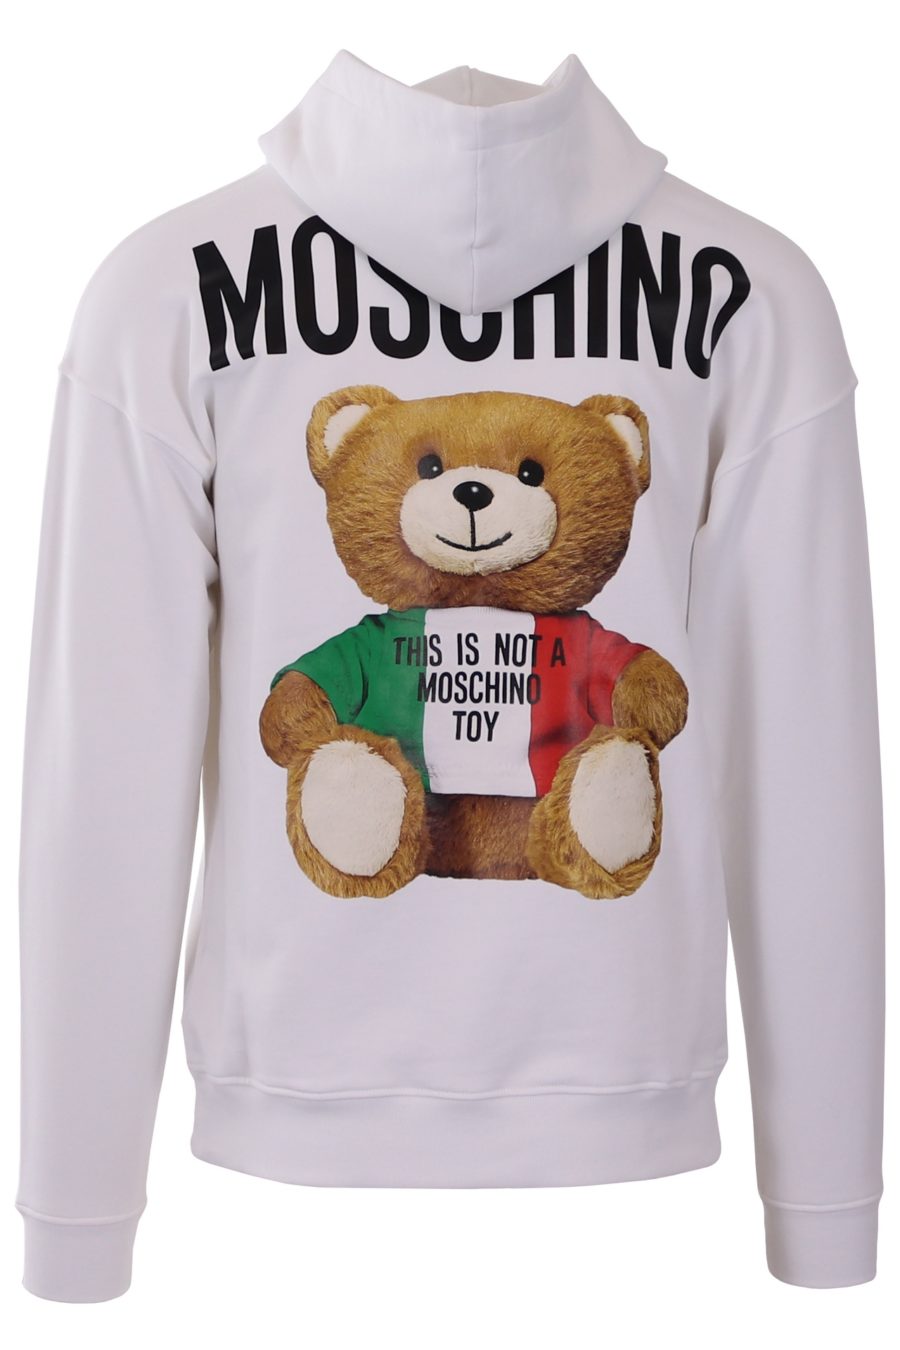 Sweatshirt Moschino Couture white hoodie Teddy in italian colours - 84c2662e6966425709301485e96478348e7a1aa5